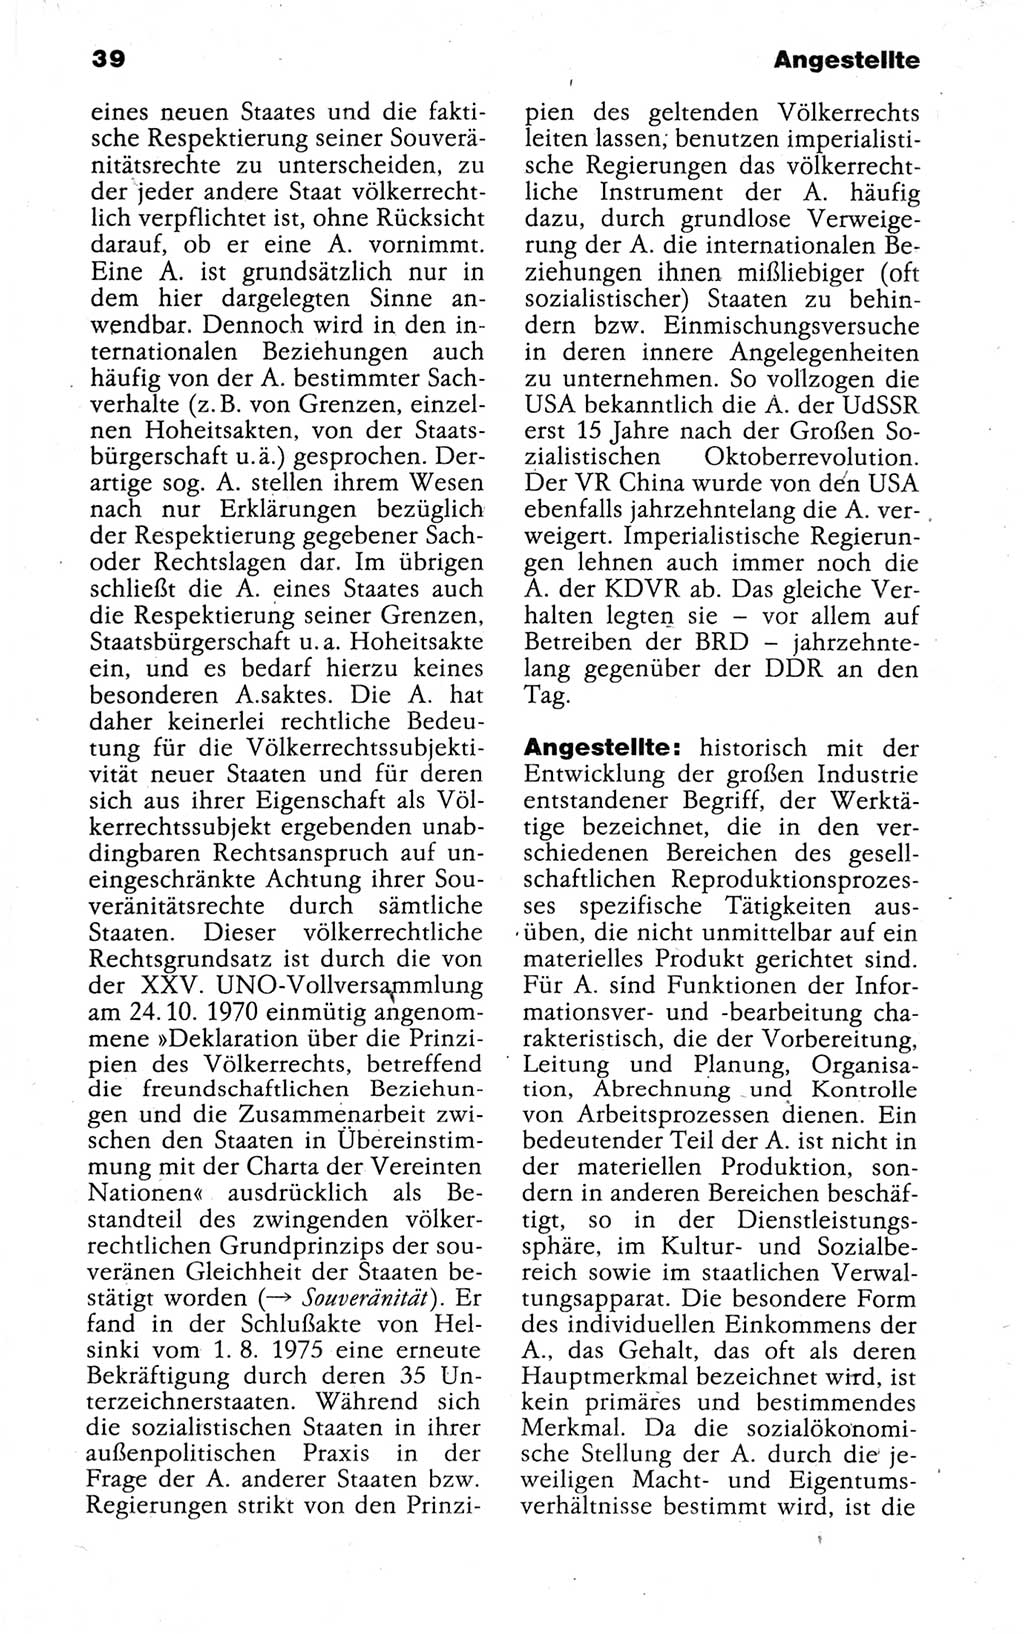 Kleines politisches Wörterbuch [Deutsche Demokratische Republik (DDR)] 1988, Seite 39 (Kl. pol. Wb. DDR 1988, S. 39)